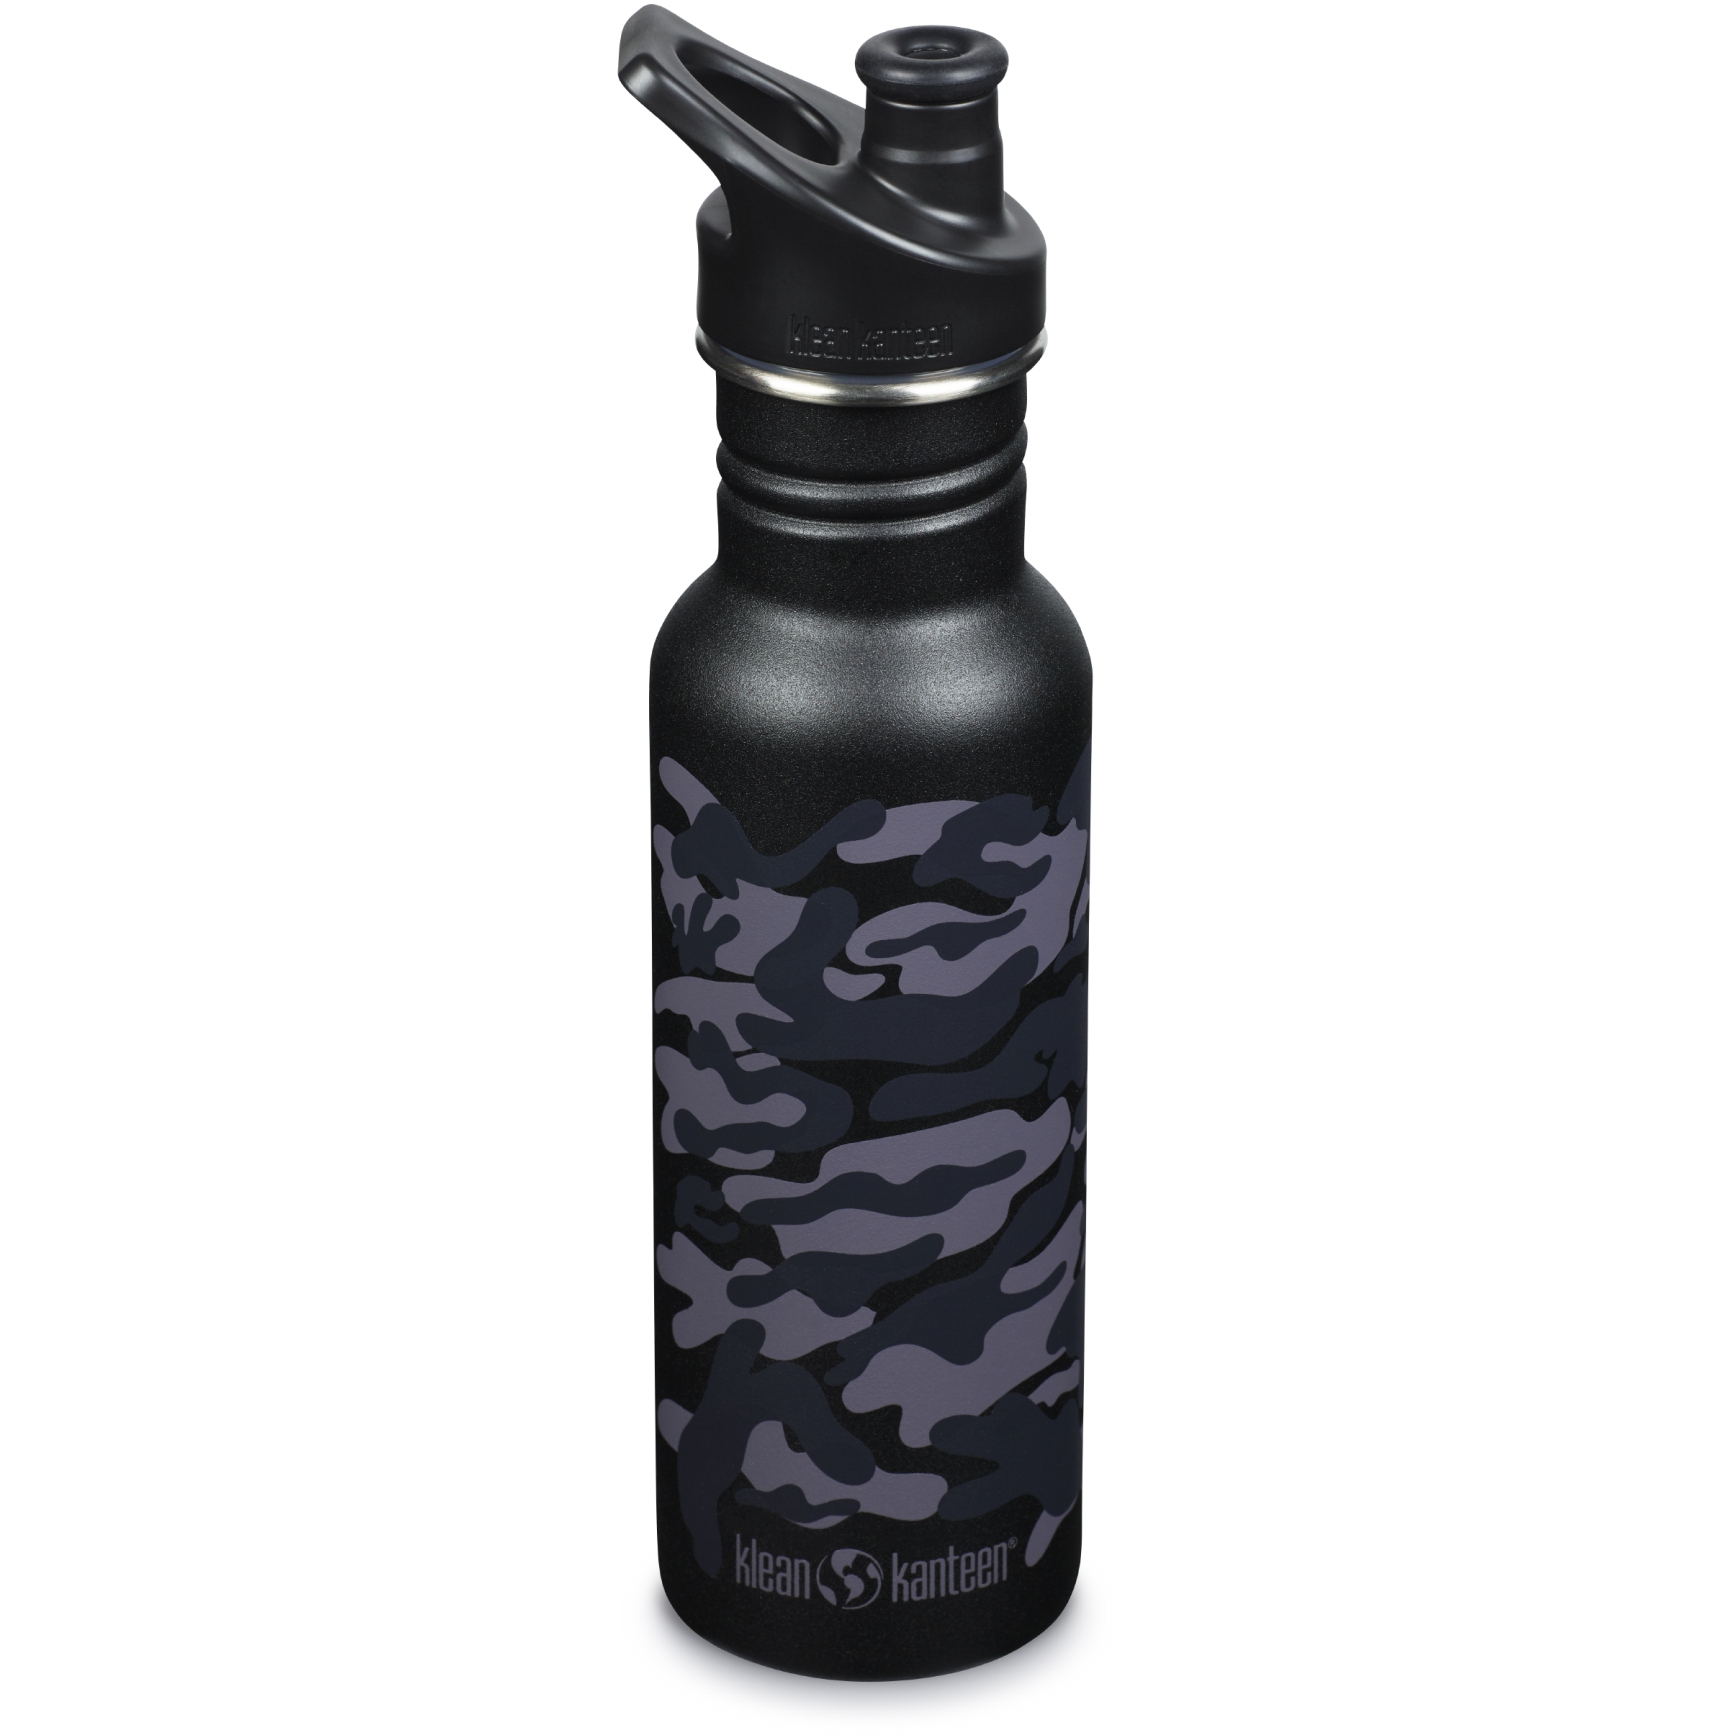 Produktbild von Klean Kanteen Classic Trinkflasche mit Sport Cap 532 ml - black camo